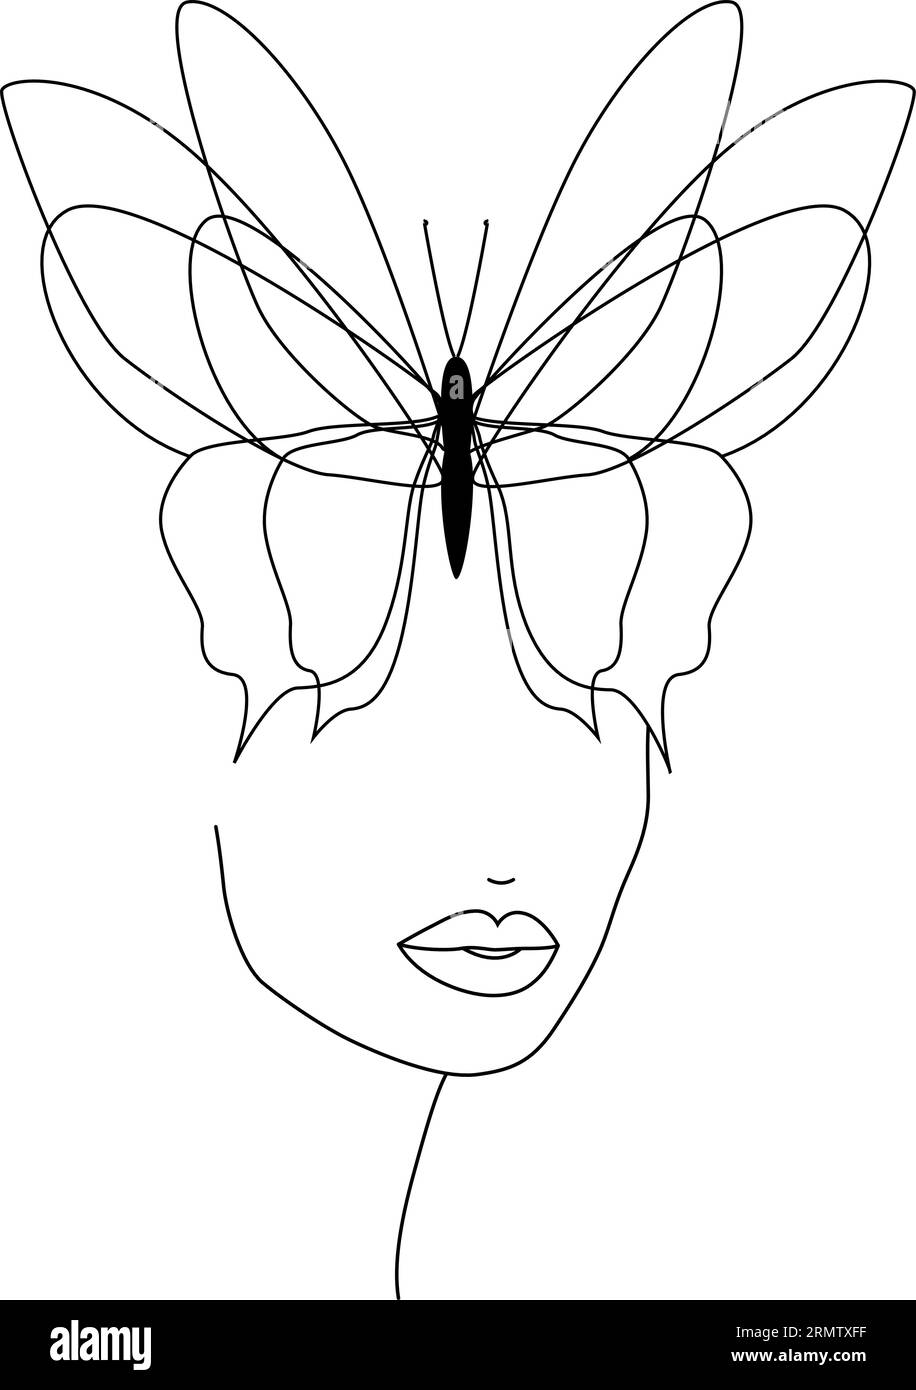 Farfalla. Faccia a farfalla, linea continua, disegno del viso e dell'acconciatura Illustrazione Vettoriale